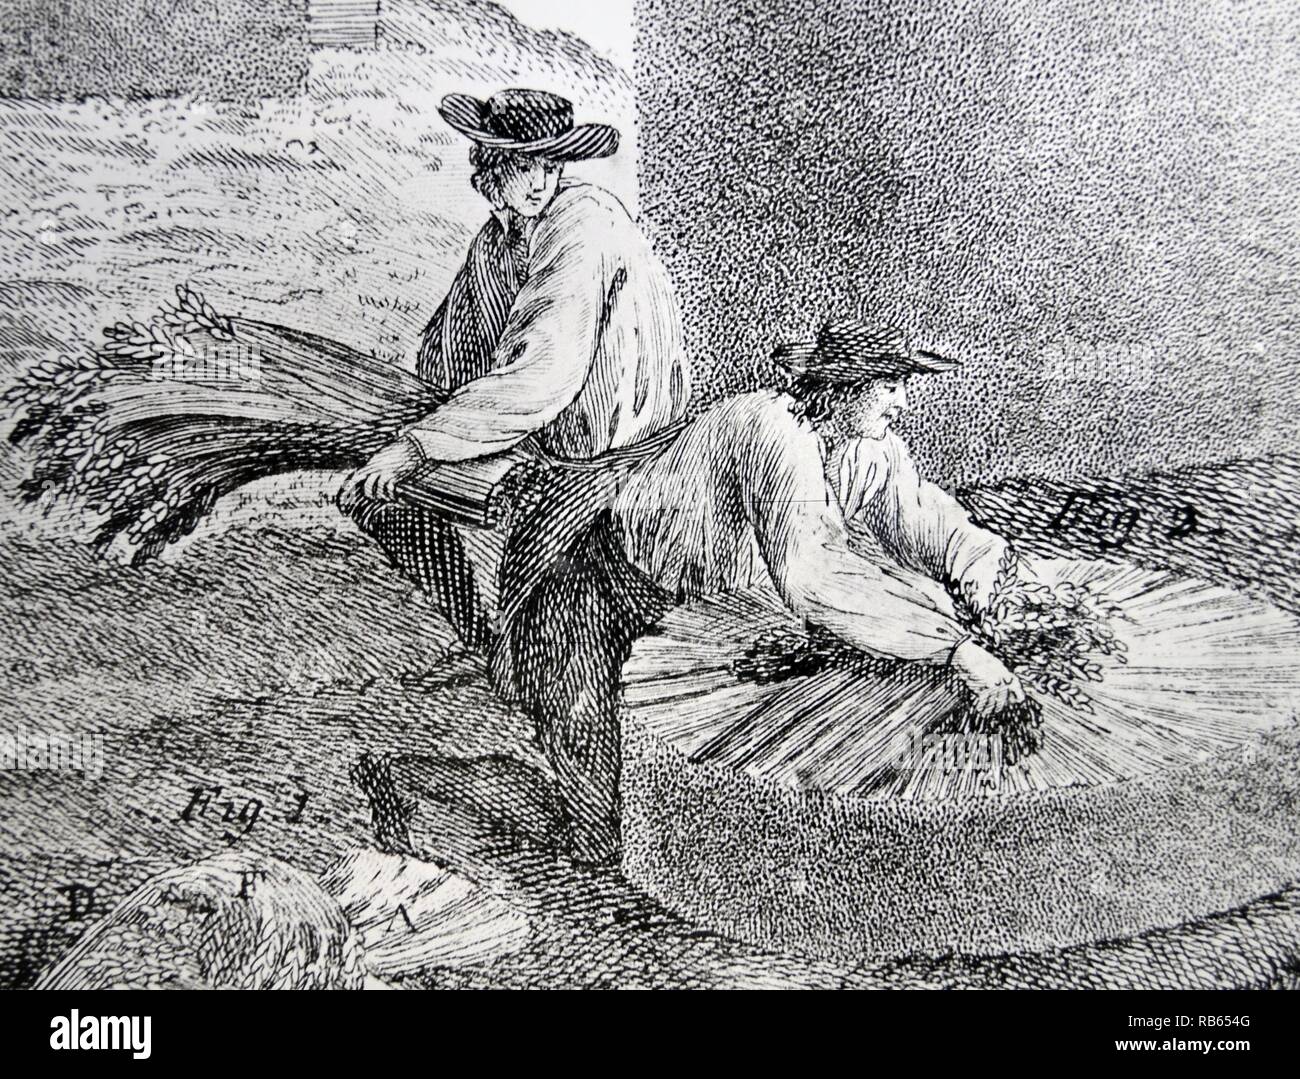 Les ouvriers agricoles commencent à construire une pile provisoires de blé. Dans ''Cours complet d'Agriculture ...'' par François Rozier, Paris, 1793-1800. Banque D'Images